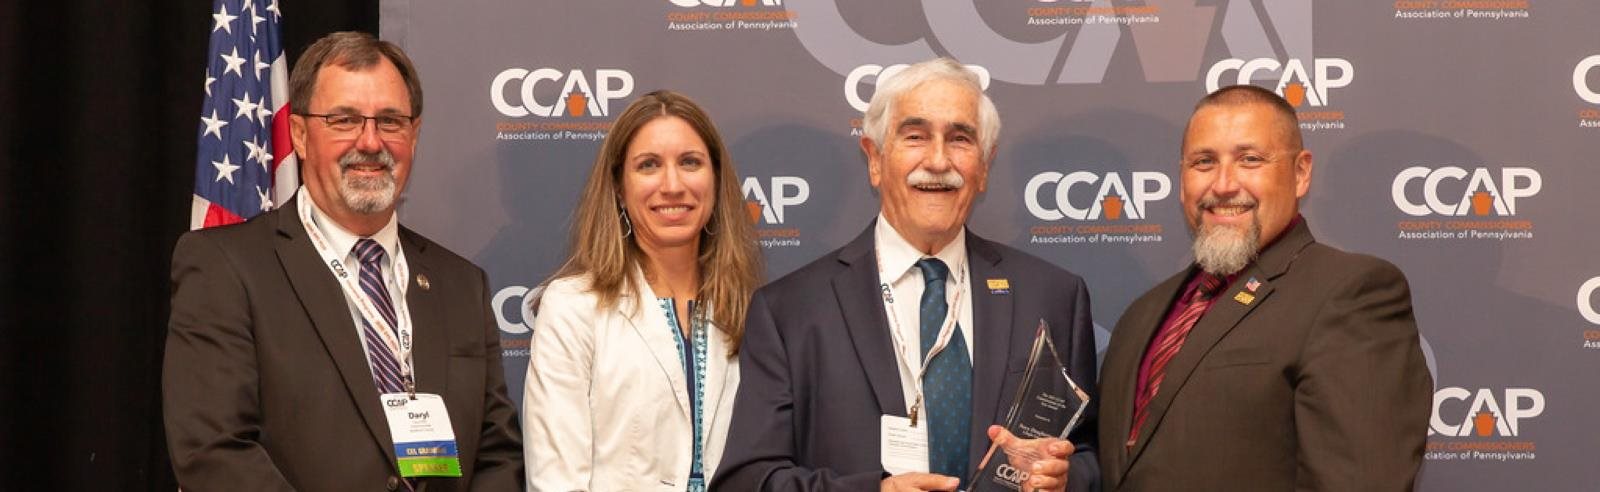 CCAP Awards Photo